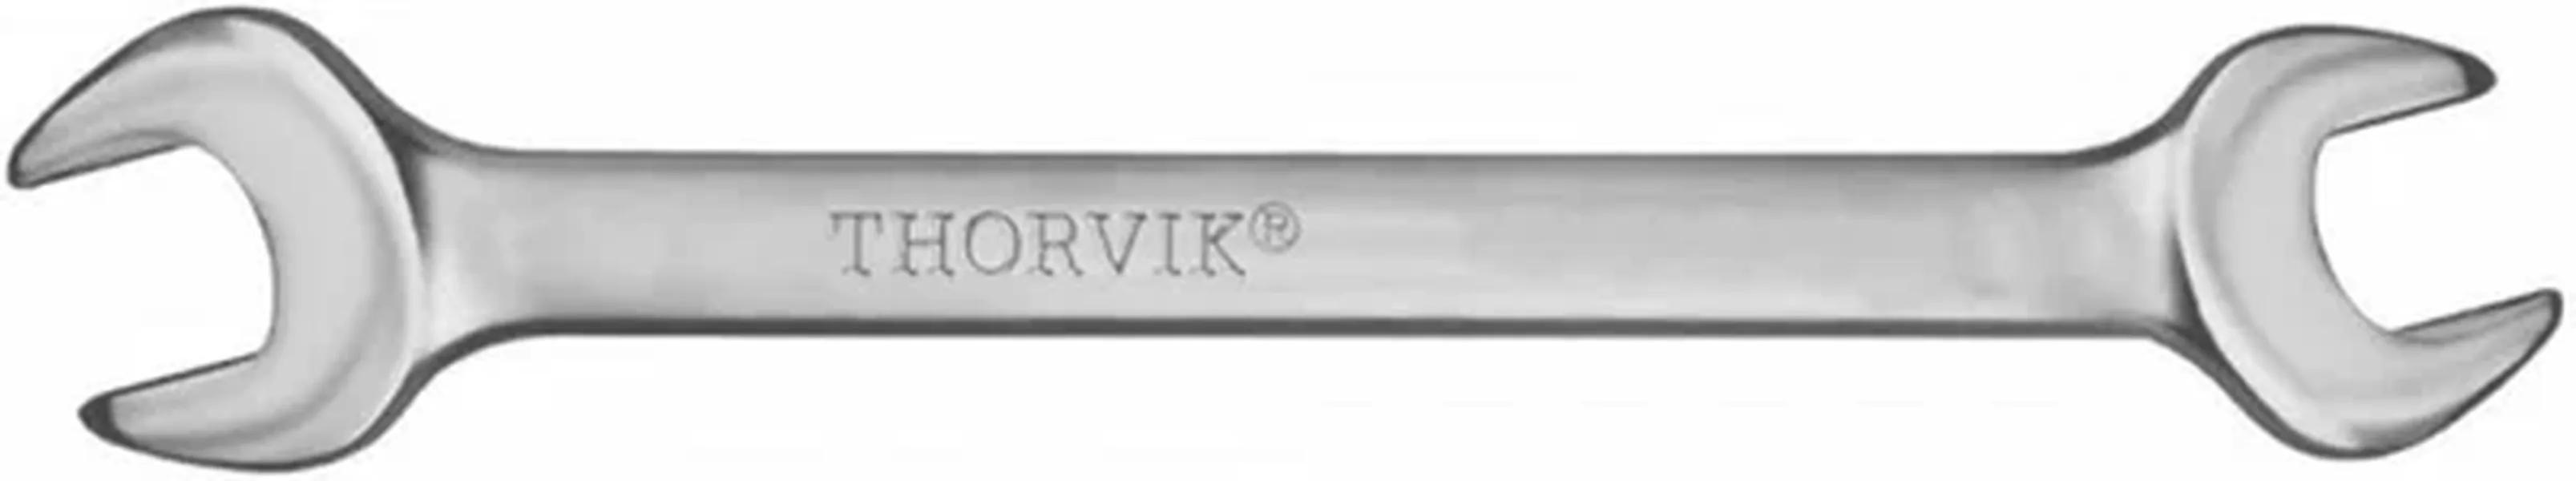 ключ комбинированный 12 х 12 thorvik серии arc thorvik арт w30012 Ключ комбинированный THORVIK ARC 30 мм